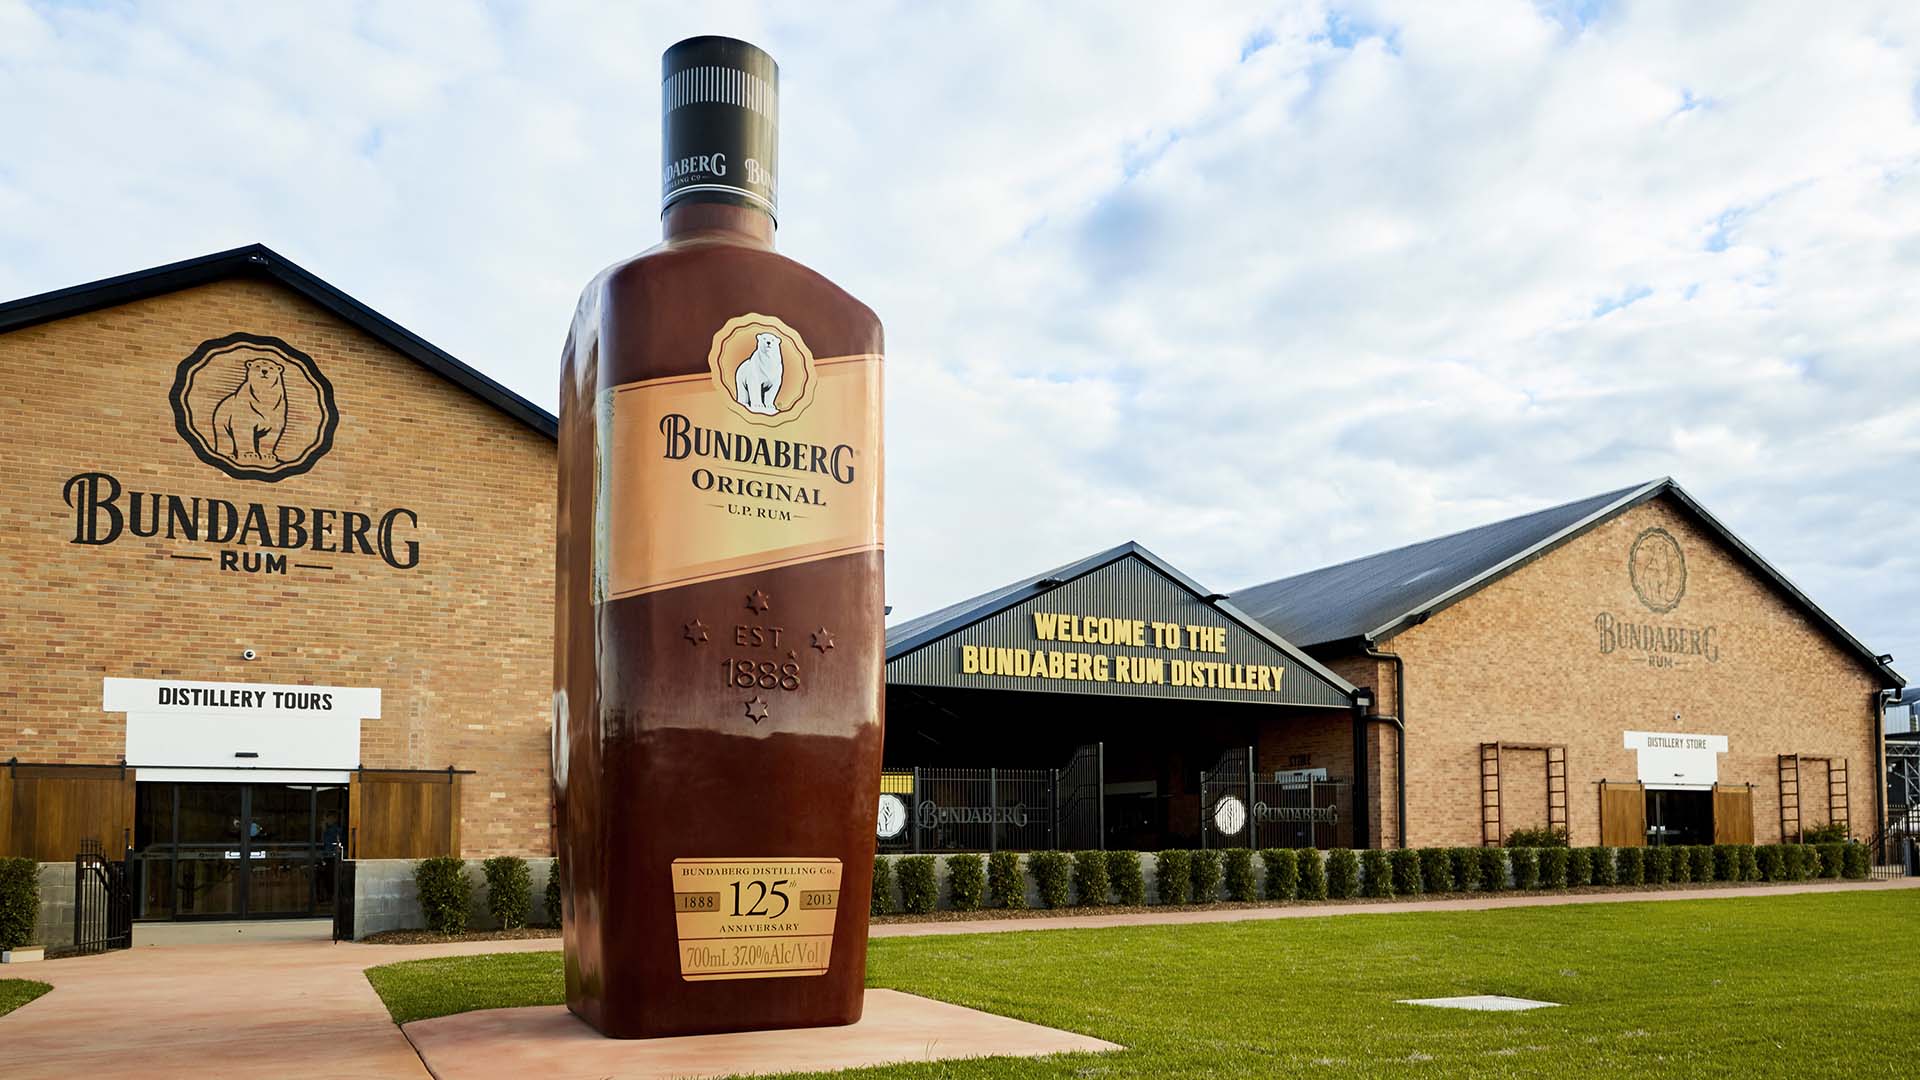 Queensland's Bundaberg and Beenleigh Rum Distilleries Are Now Making Hand Sanitiser